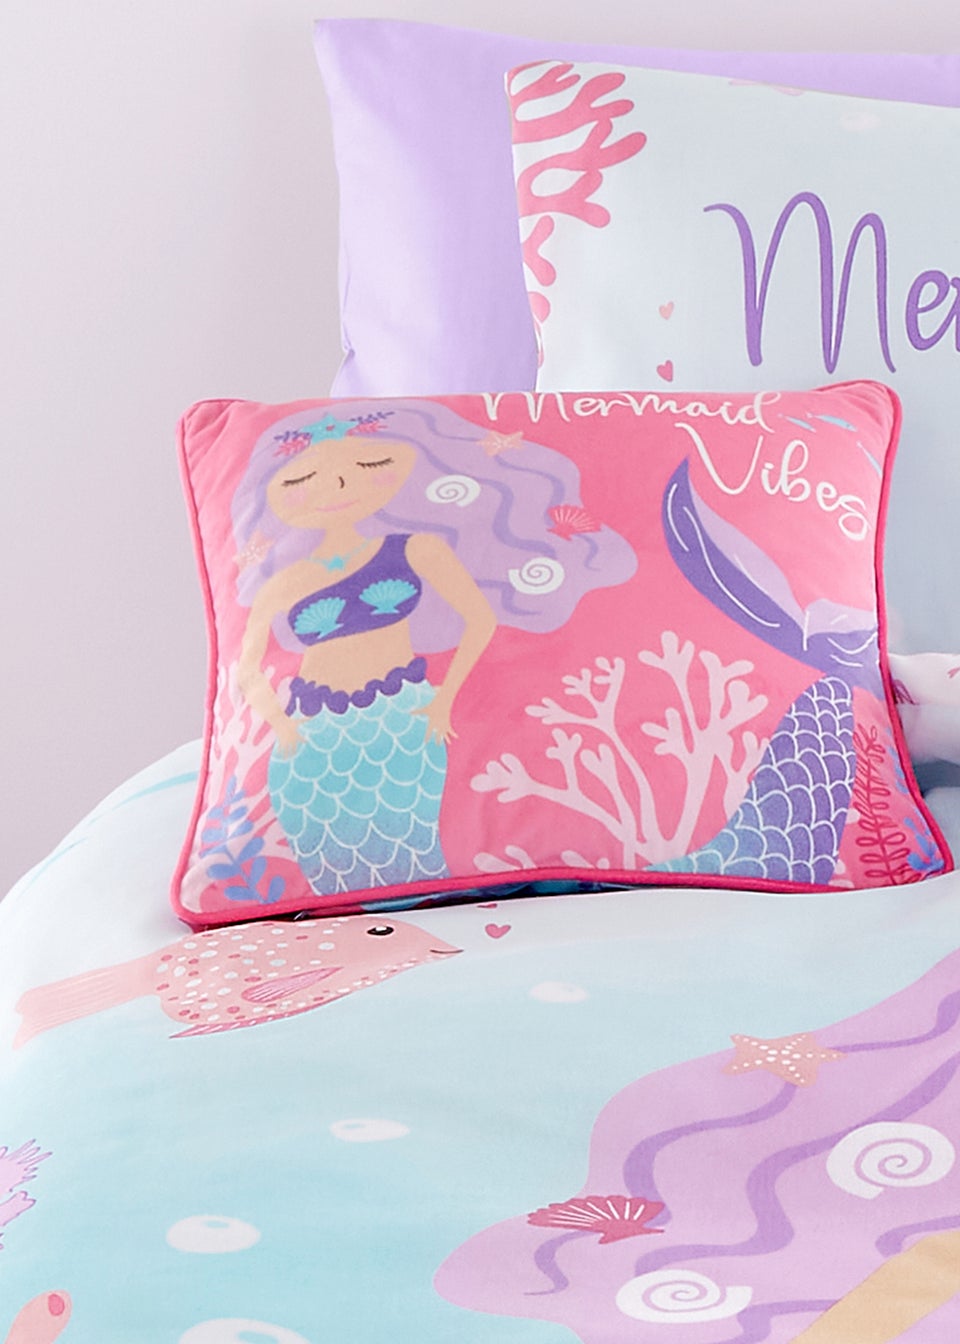 Bedlam Mermaid Vibes Velvet Filled Cushion